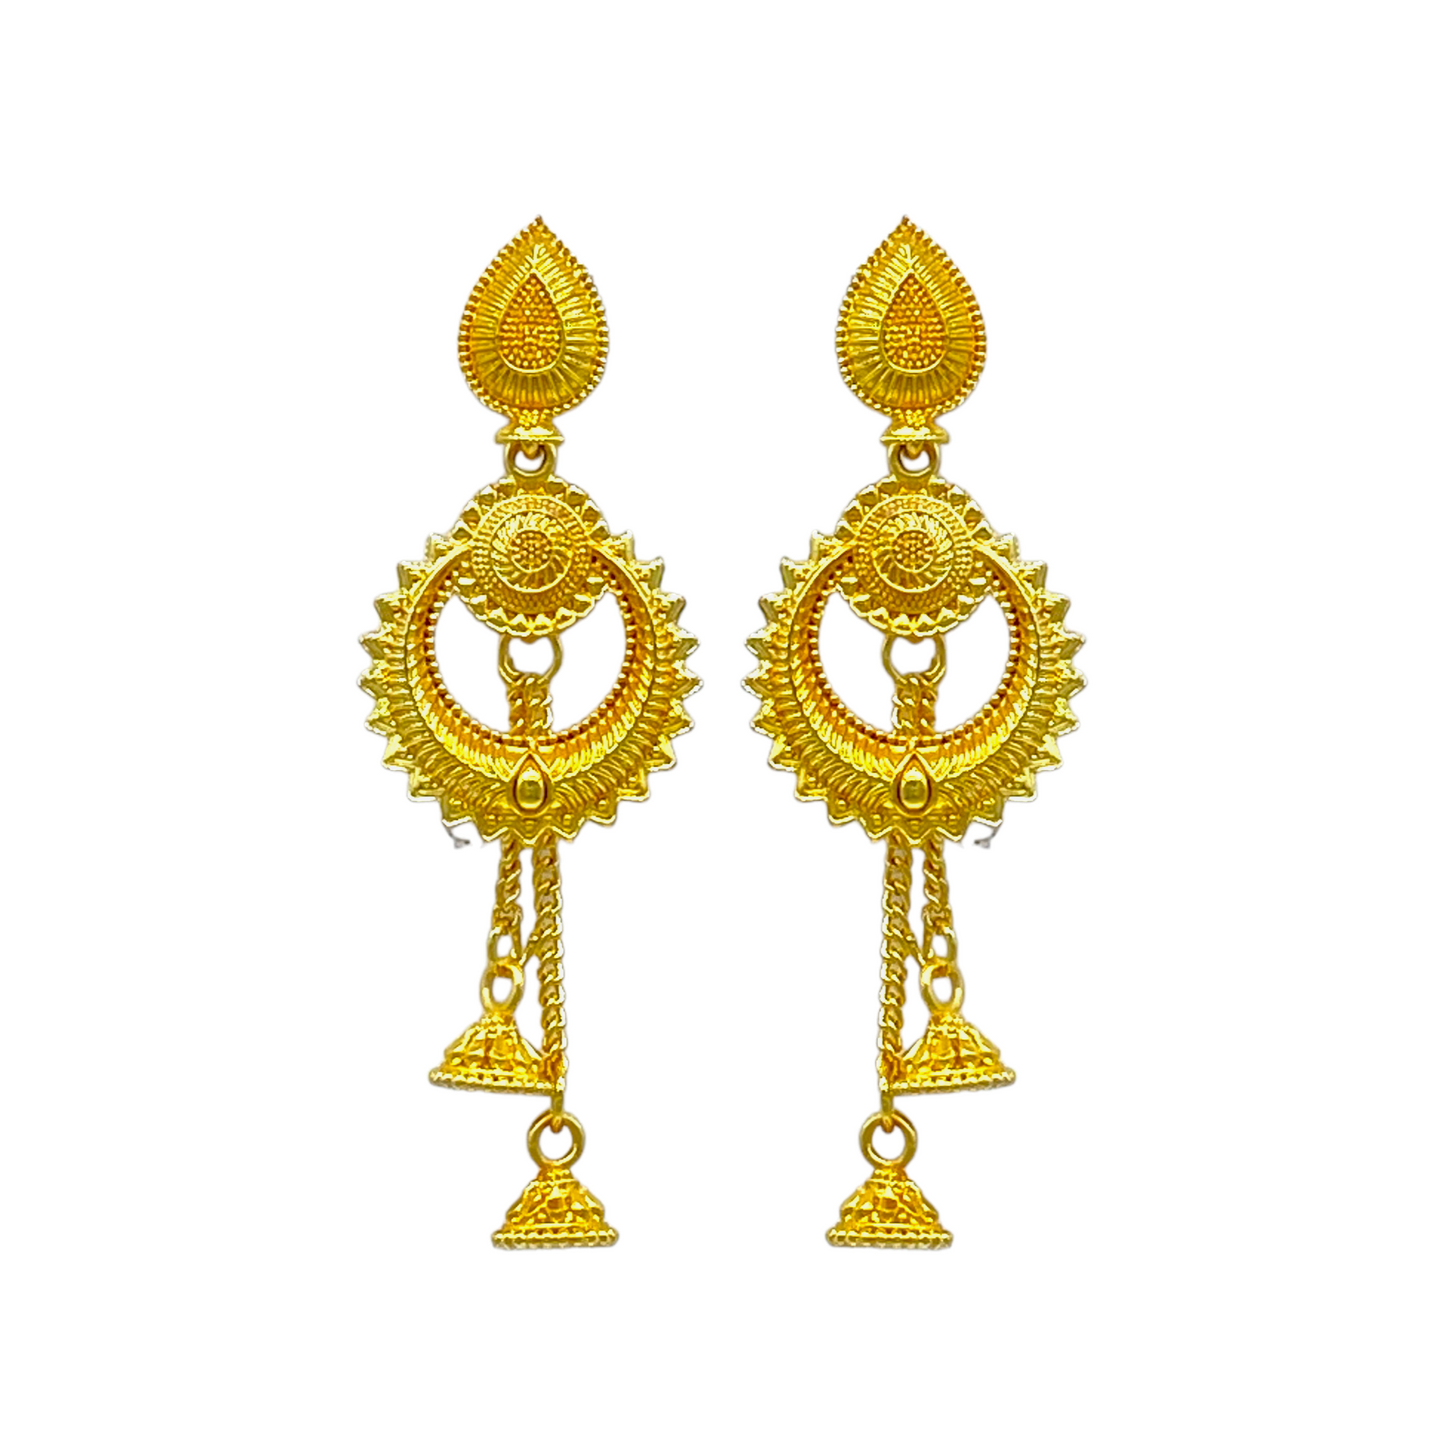 Gold Chandbali Earrings with Stylish Dangling chain with Zumkha